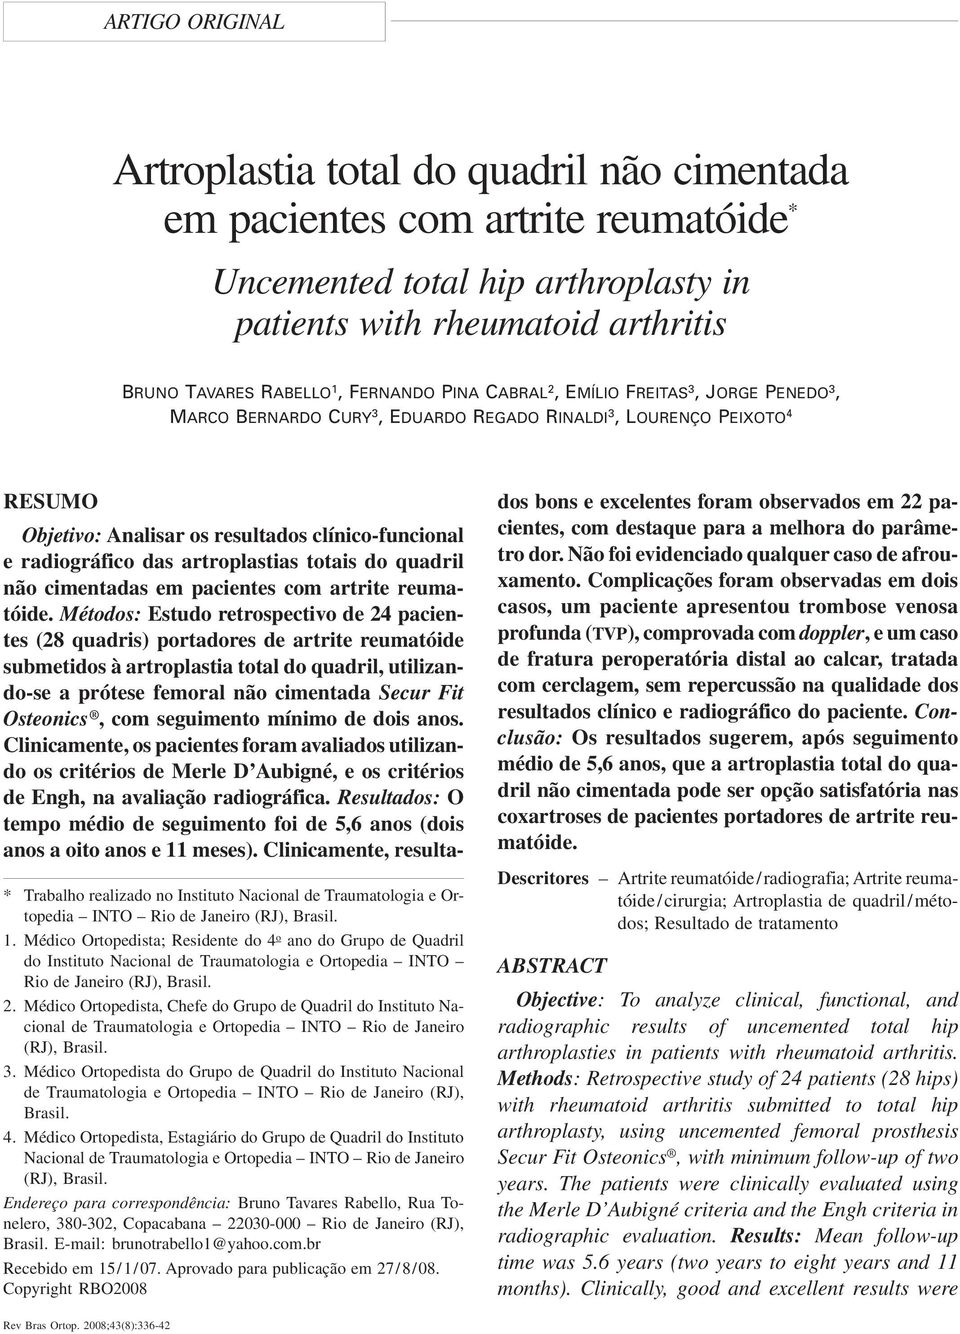 das artroplastias totais do quadril não cimentadas em pacientes com artrite reumatóide.